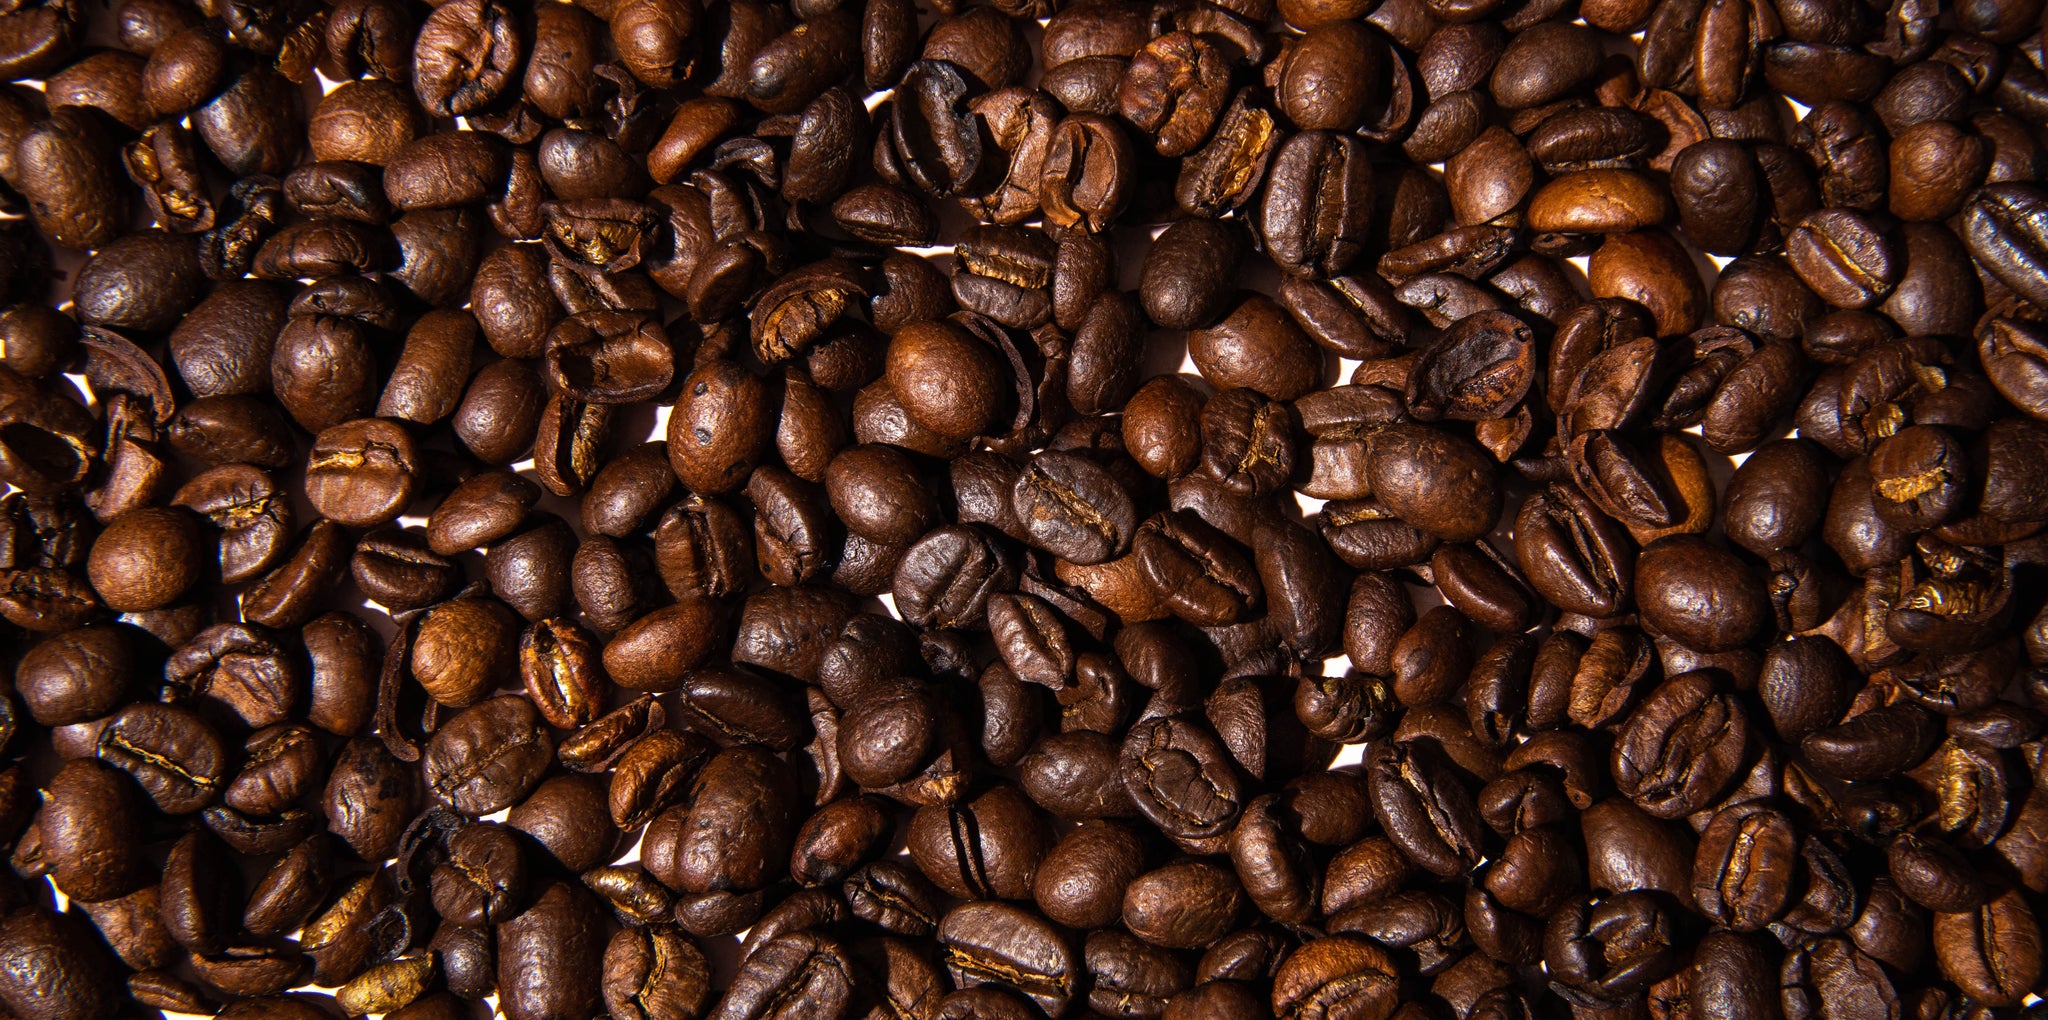 Coffee beans from Da Lat, Vietnam